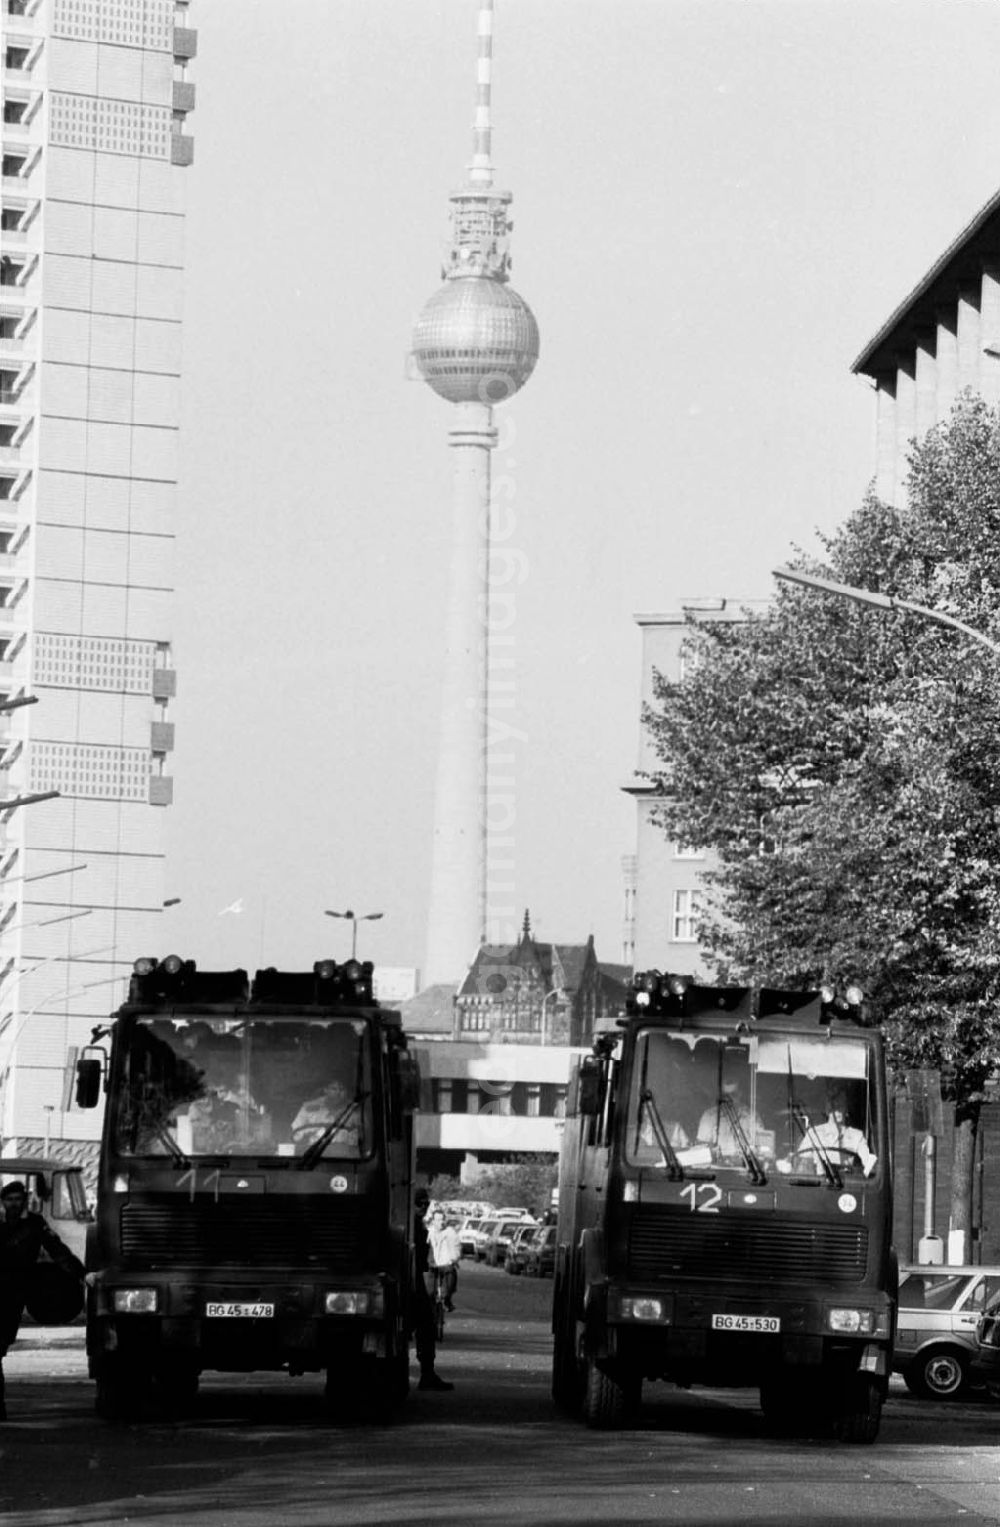 GDR picture archive: Berlin - Krawalle auf dem Alexanderplatz, Wasserwerfer auf Strasse, im Hintergrund der Fernsehturm.